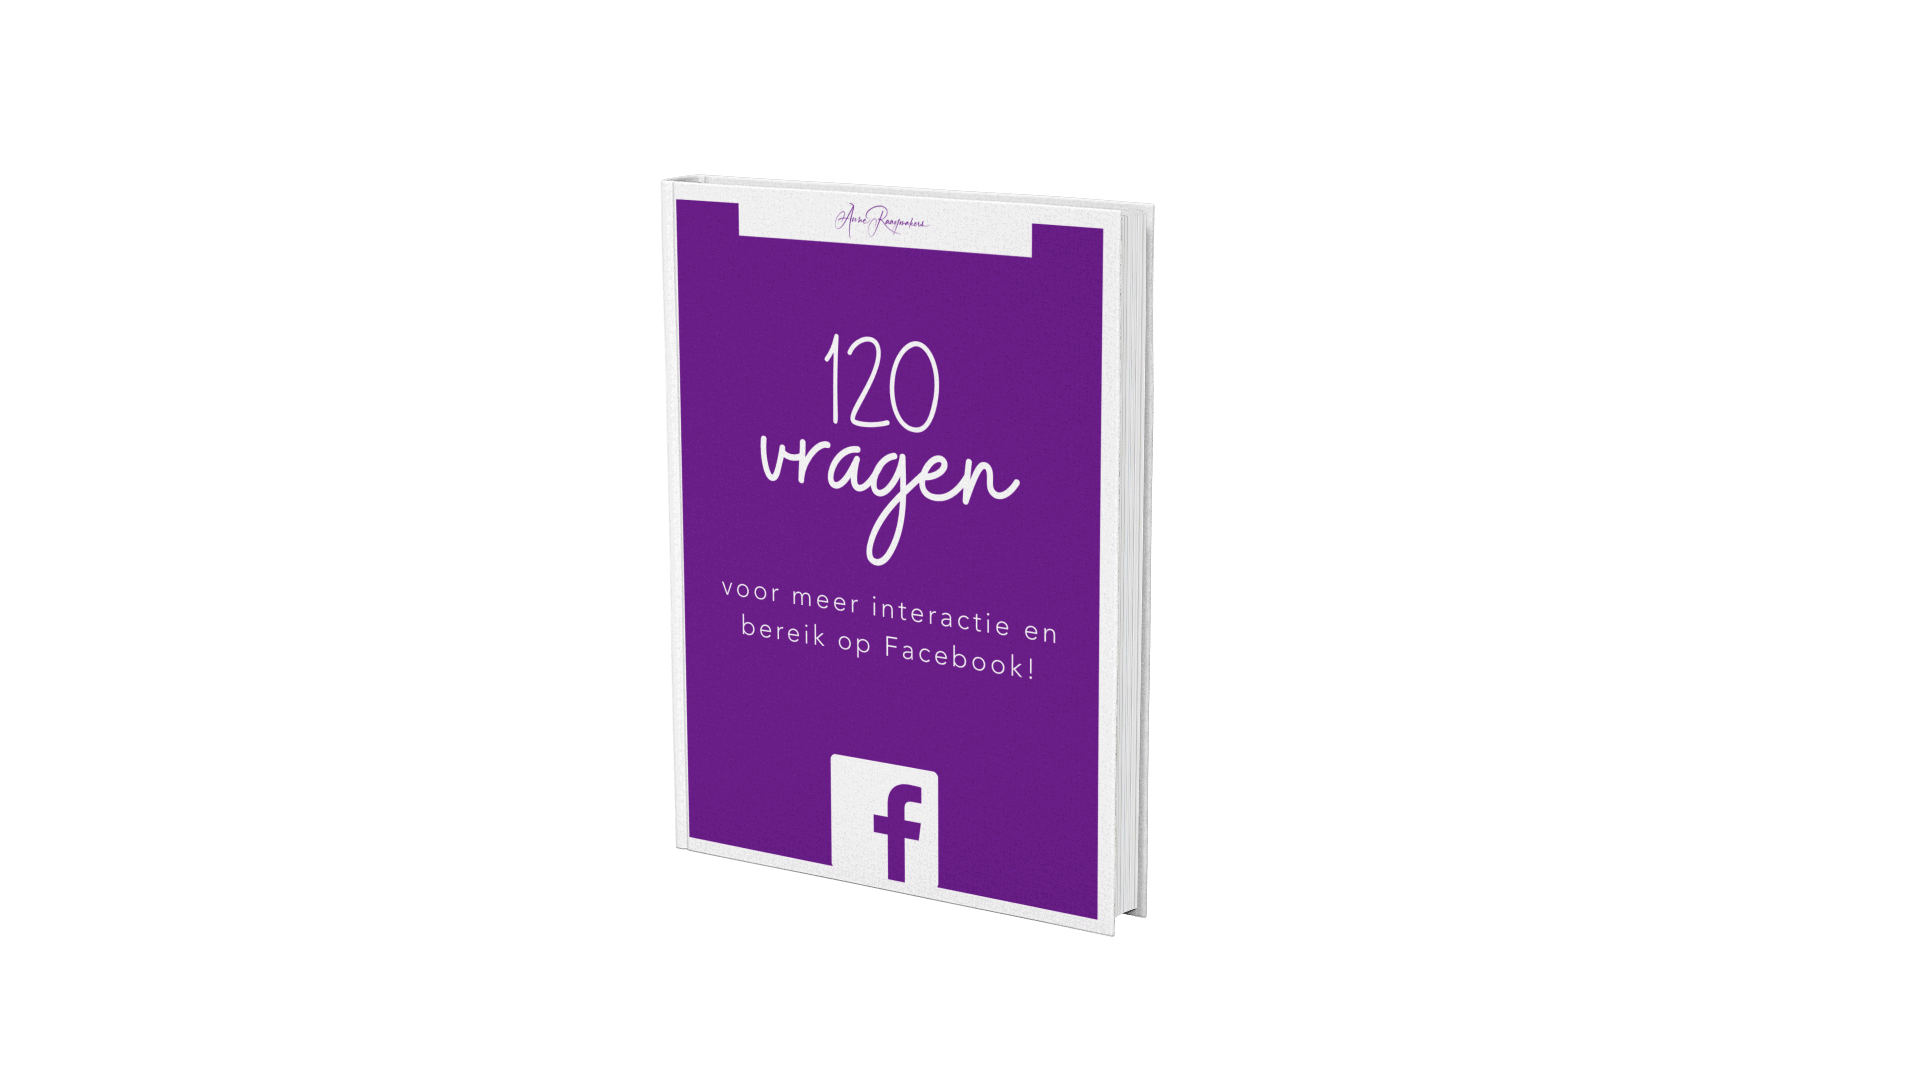 120 vragen voor meer interactie en bereik op Facebook!